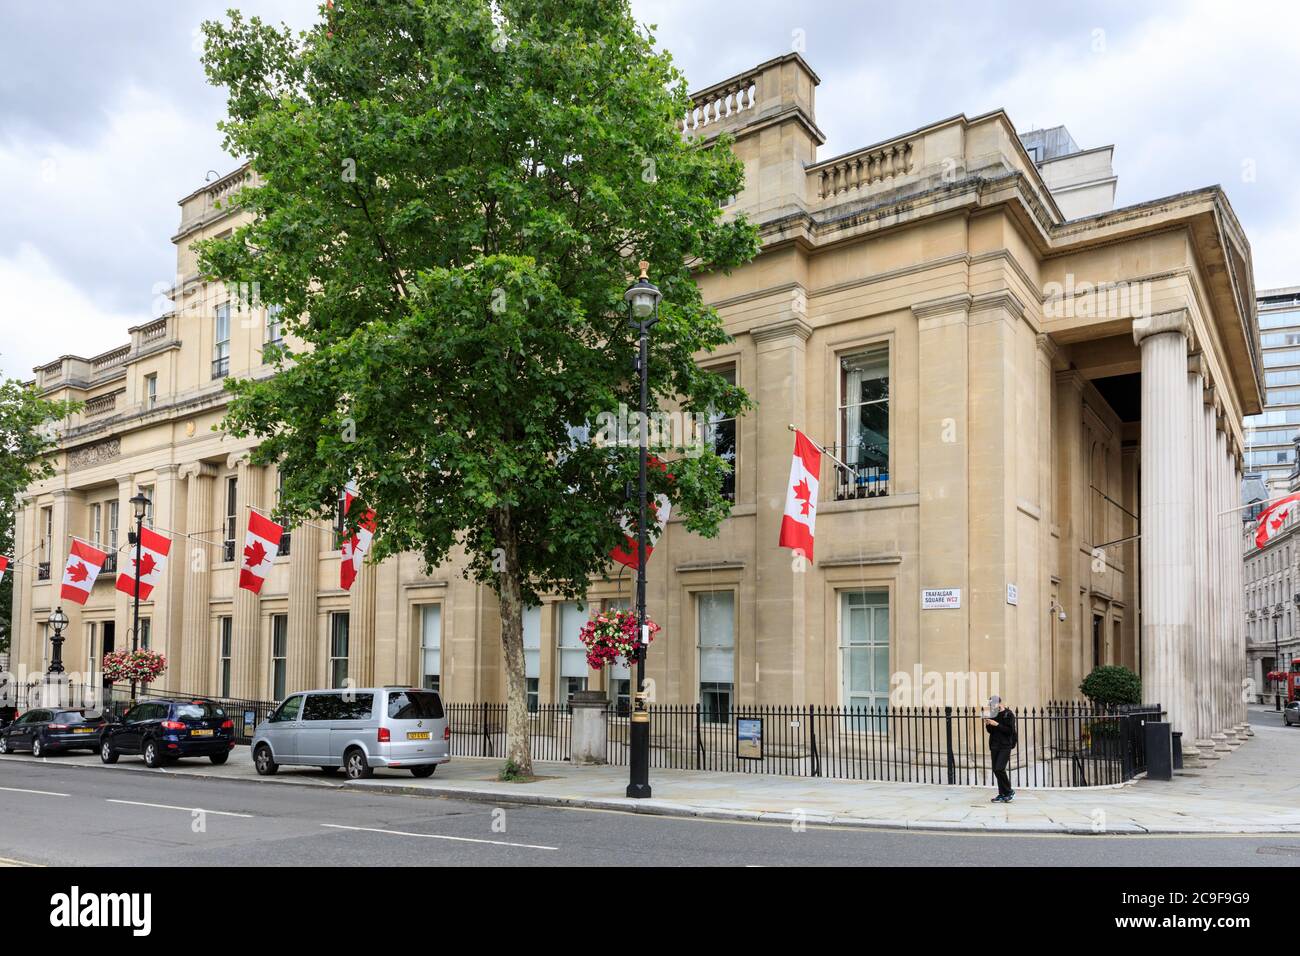 Canada House, haut-commissariat du Canada au Royaume-Uni, extérieur, Trafalgar Square, Londres, Angleterre, Royaume-Uni Banque D'Images